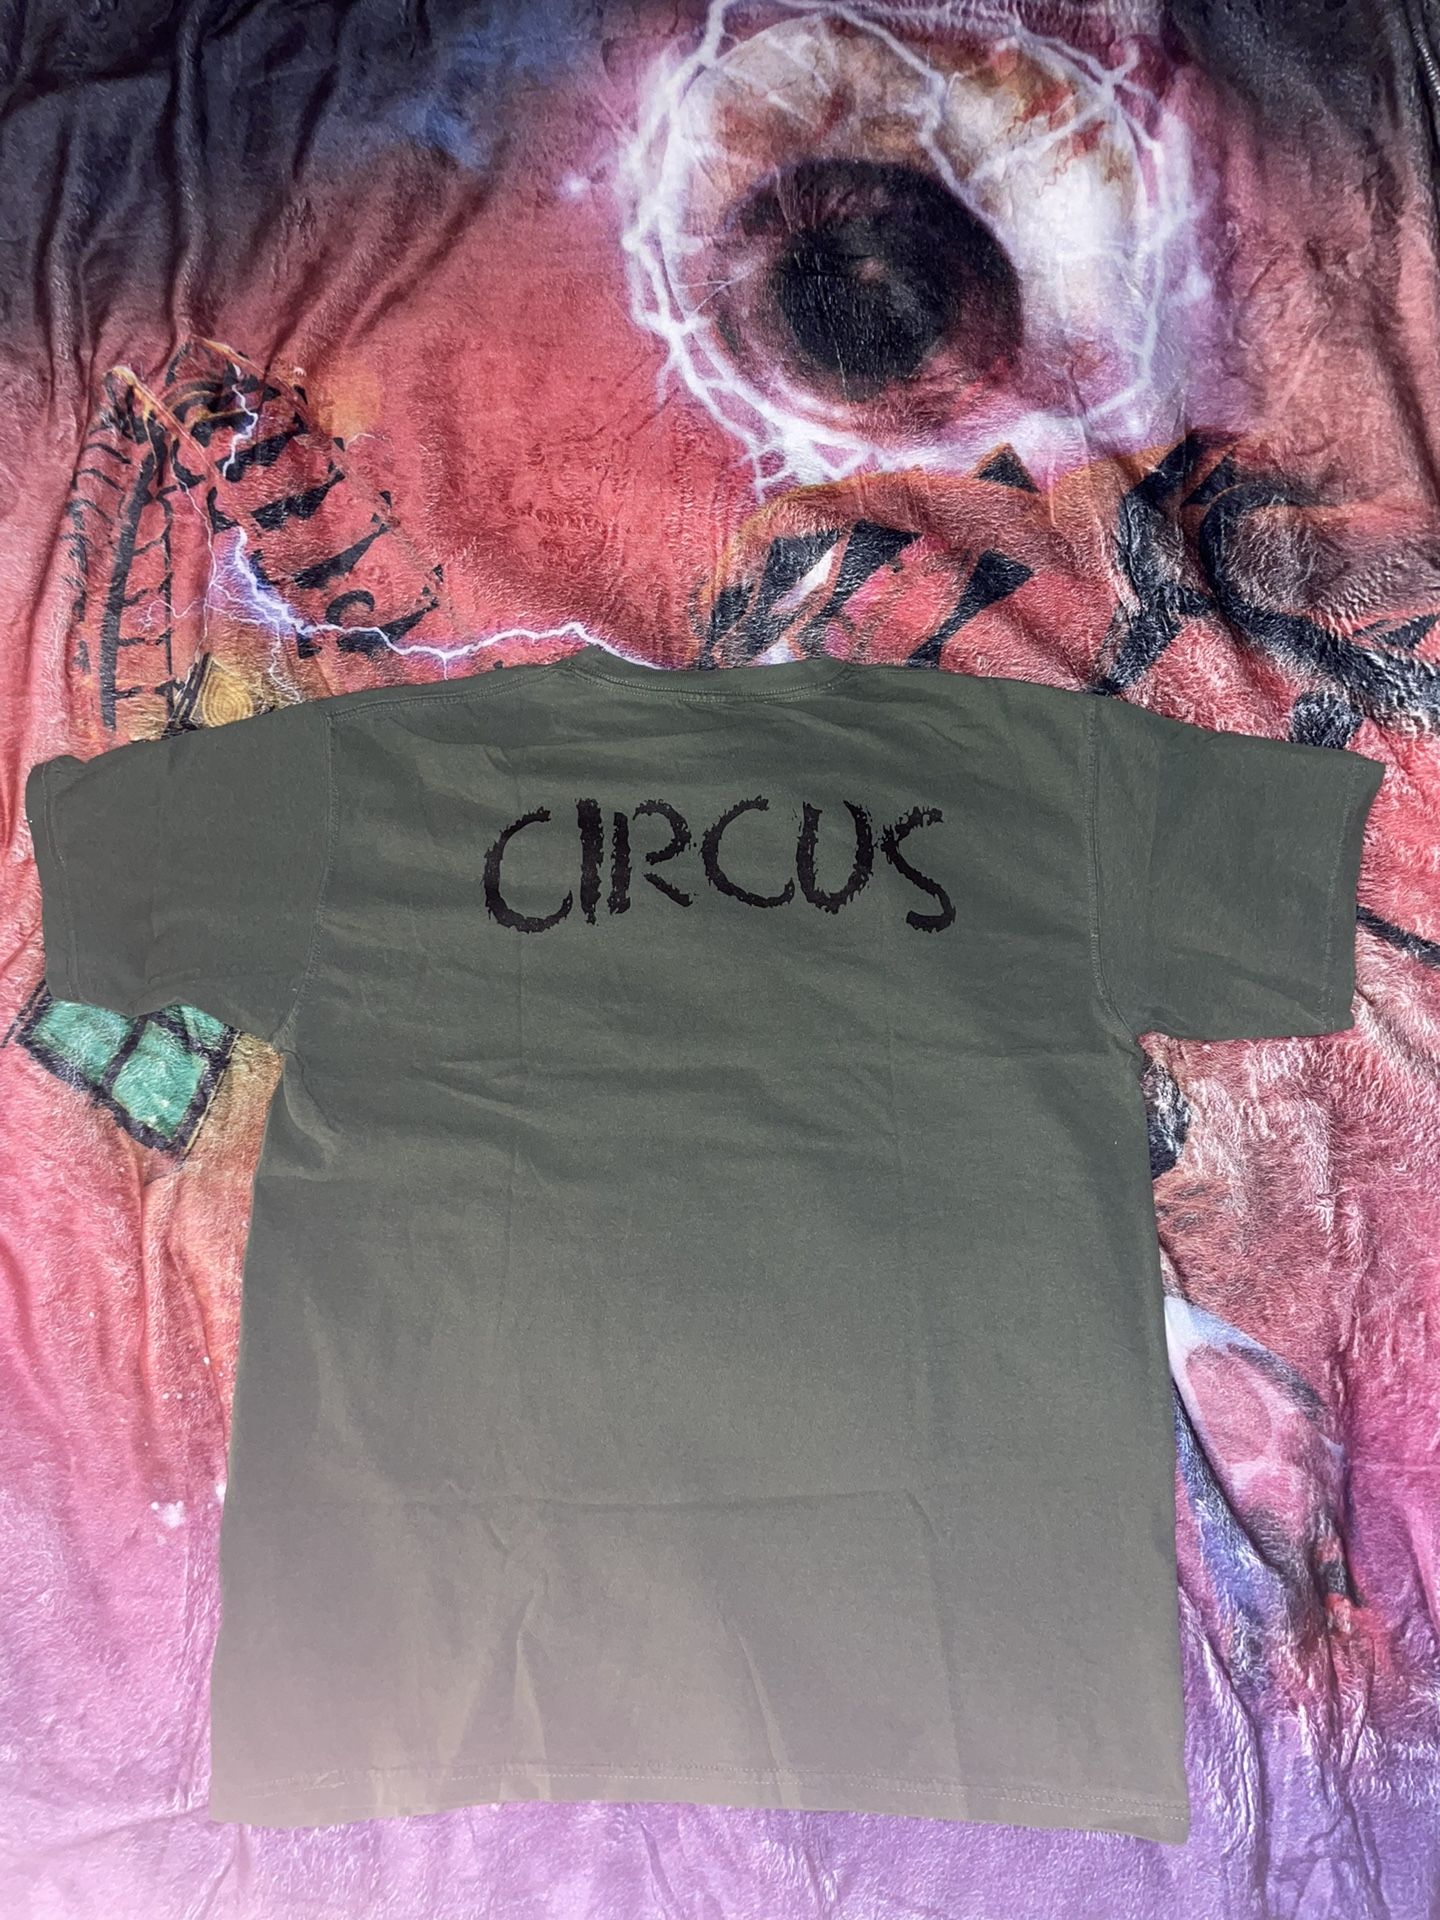 Circus Shirt Size Medium 